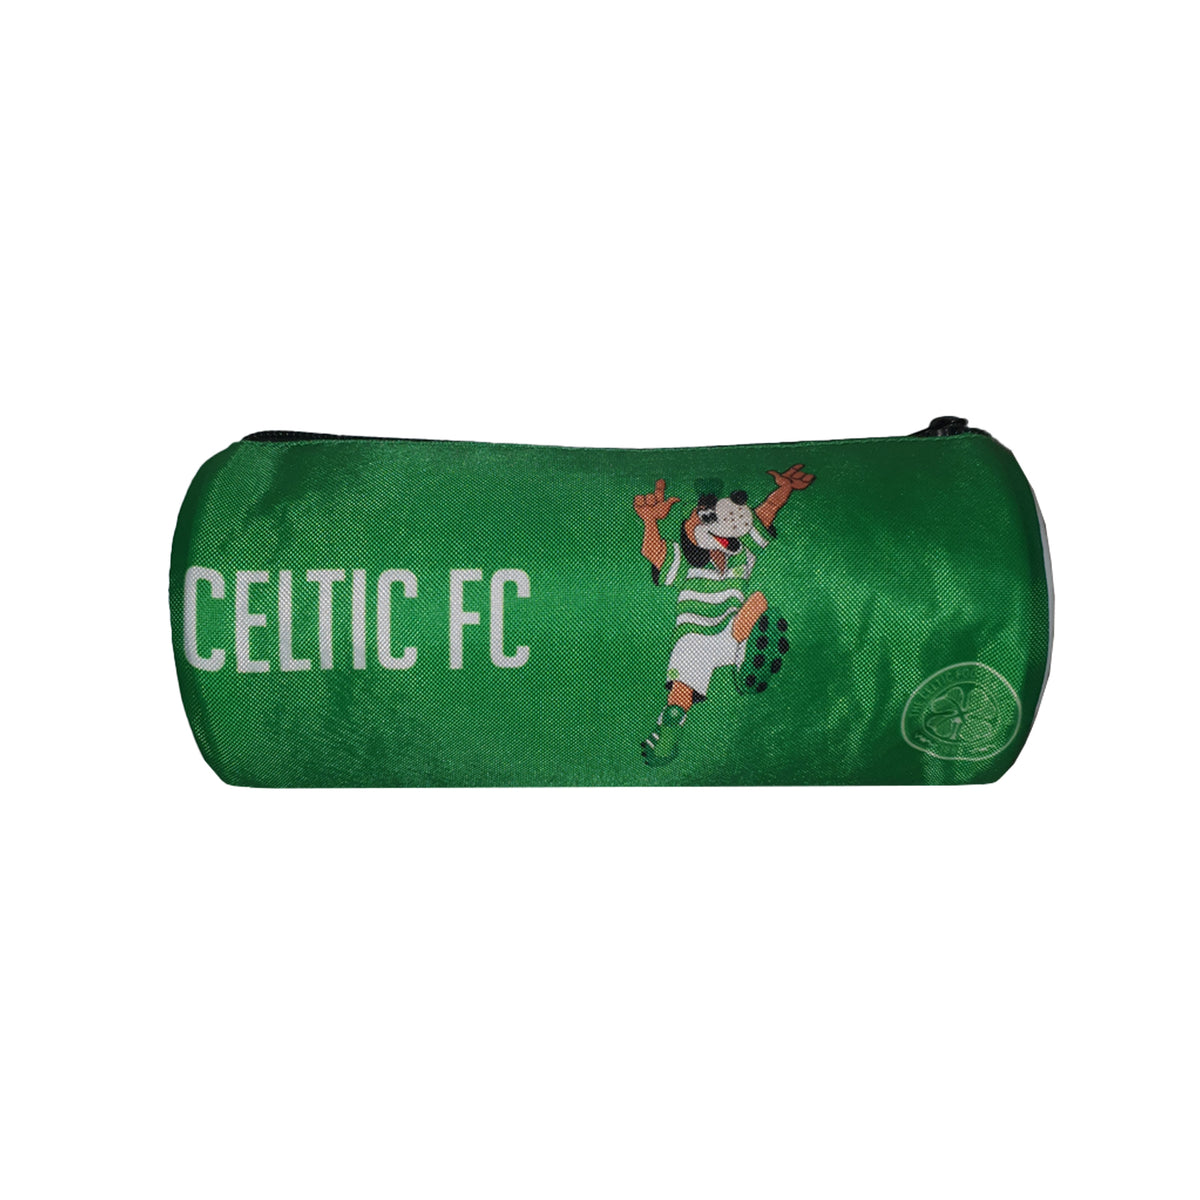 Celtic FC Mascot Circular Pencil Case